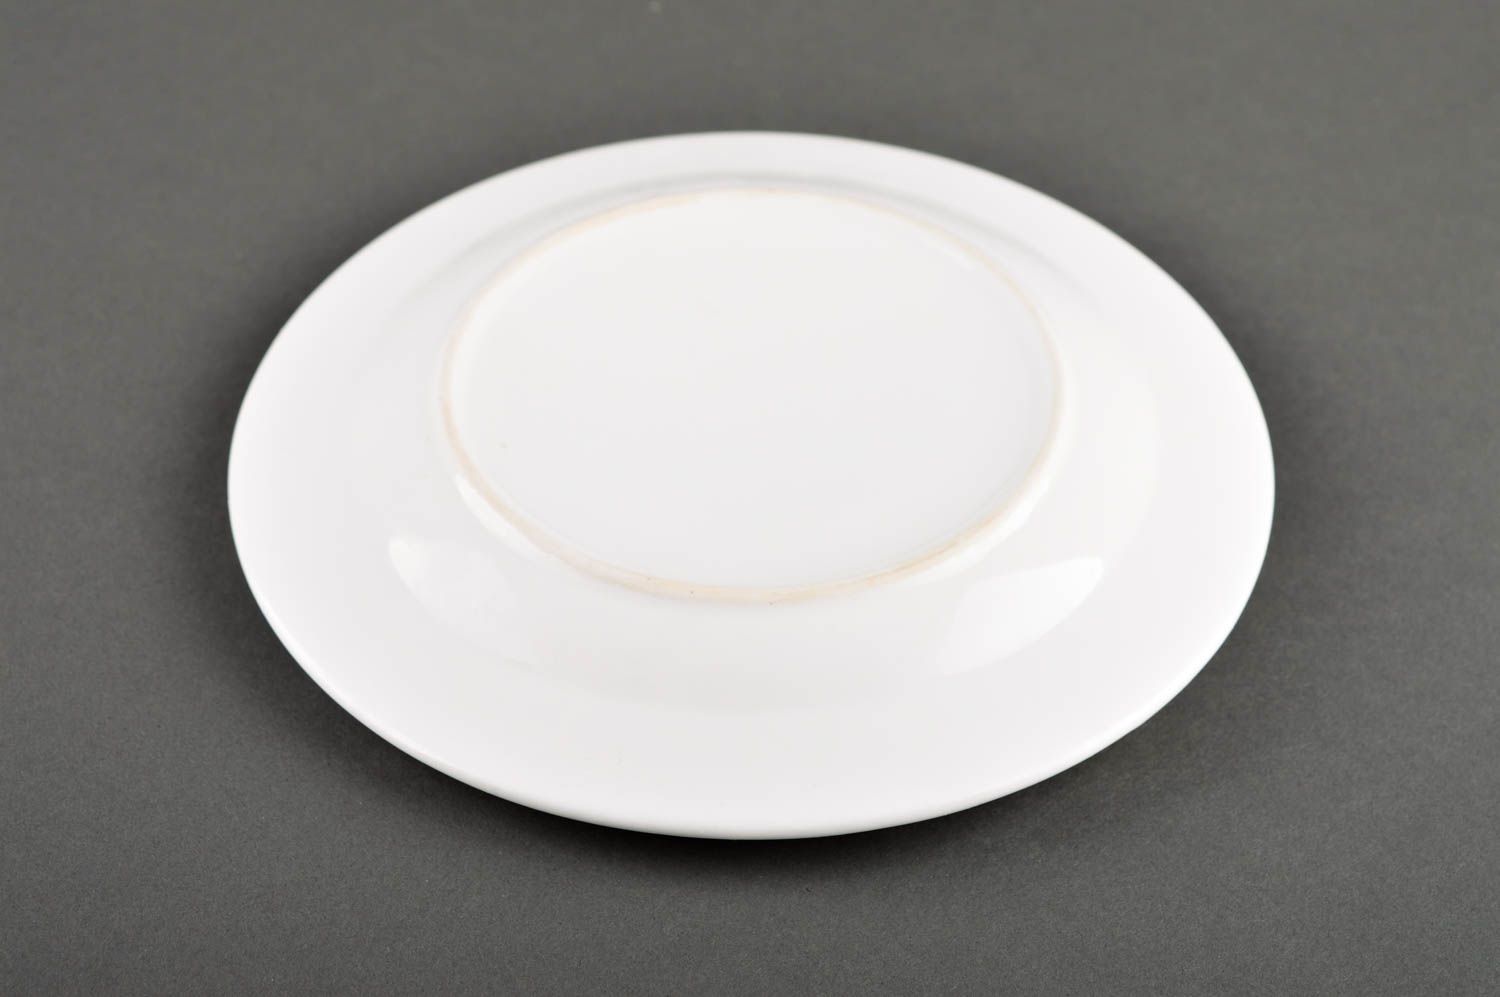 Свадебная тарелка хэнд мэйд посуда на свадьбу красивая посуда авторская тарелка фото 5